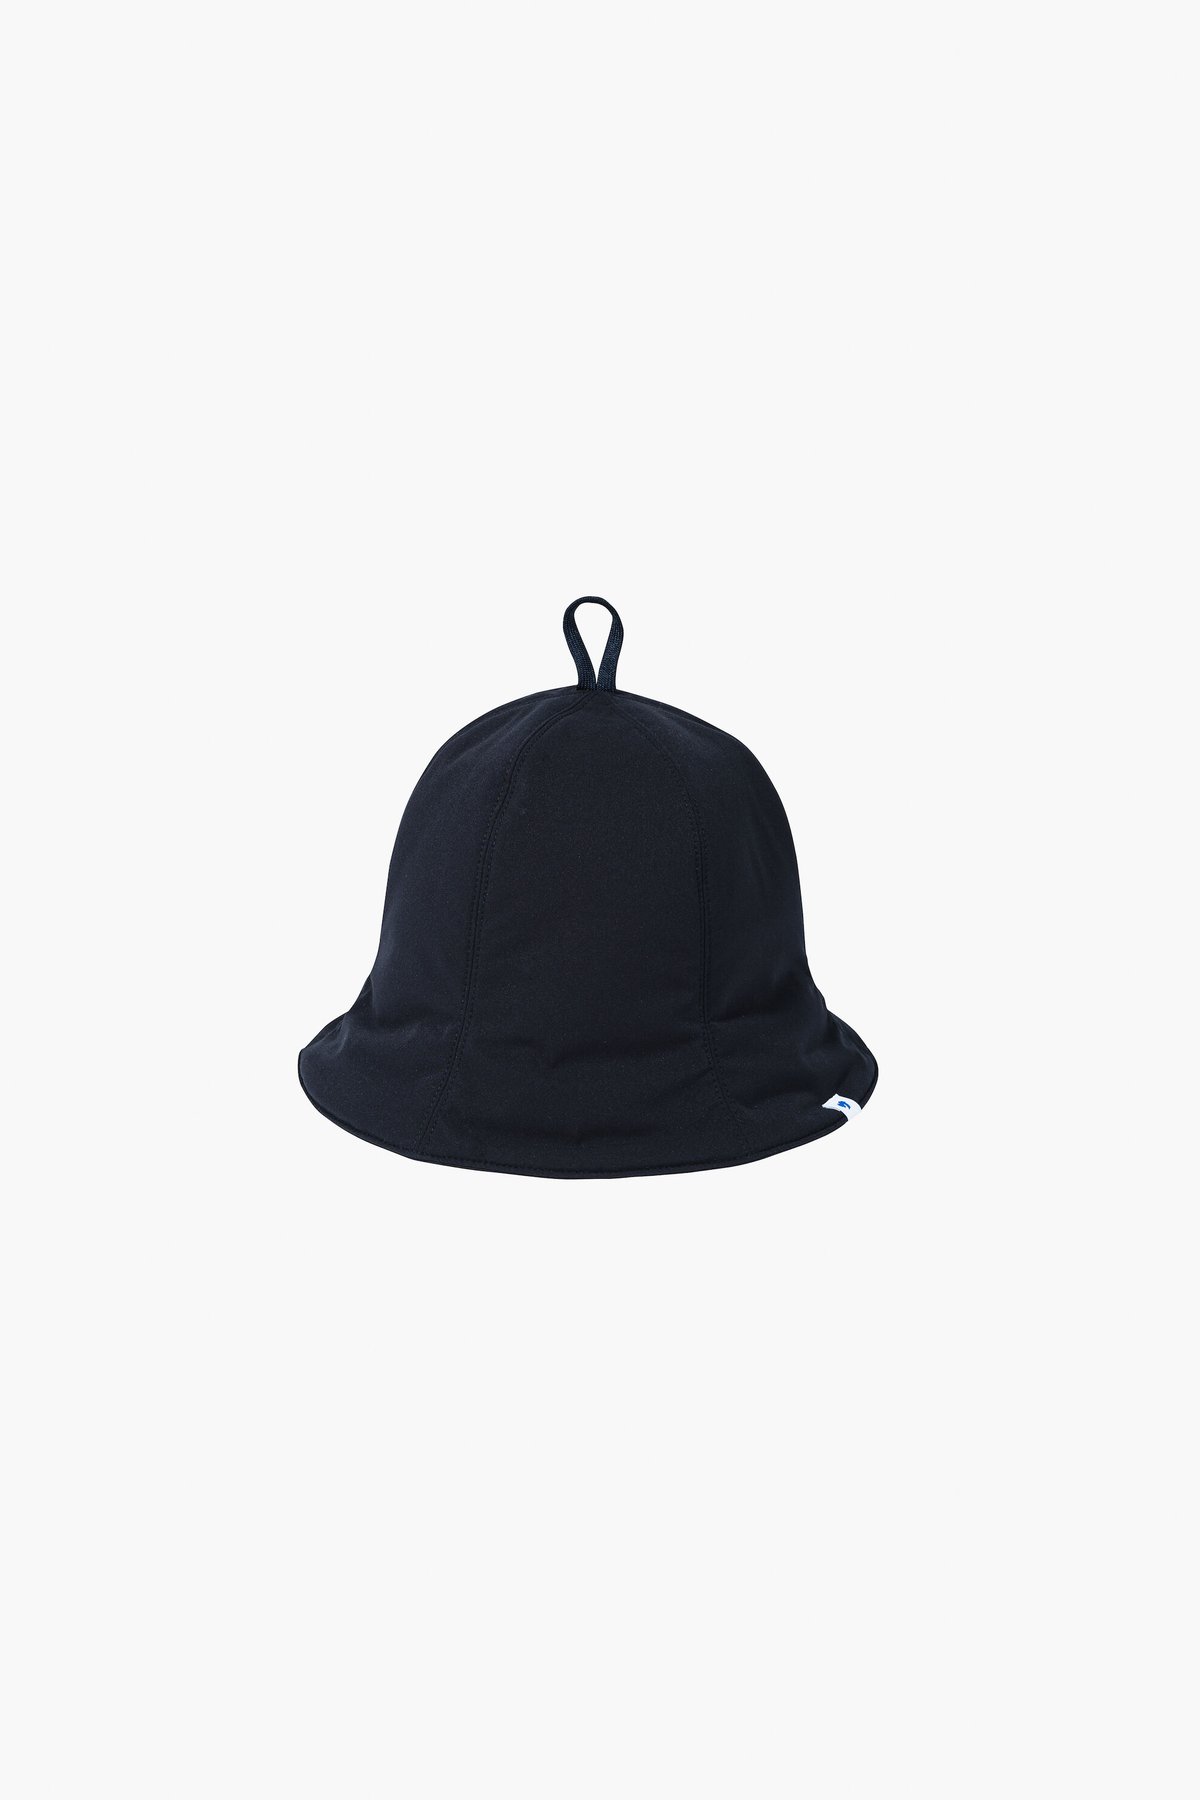 帽子 ハット OVERRIDE PADDED SAUNA HAT M - 財布、帽子、ファッション小物